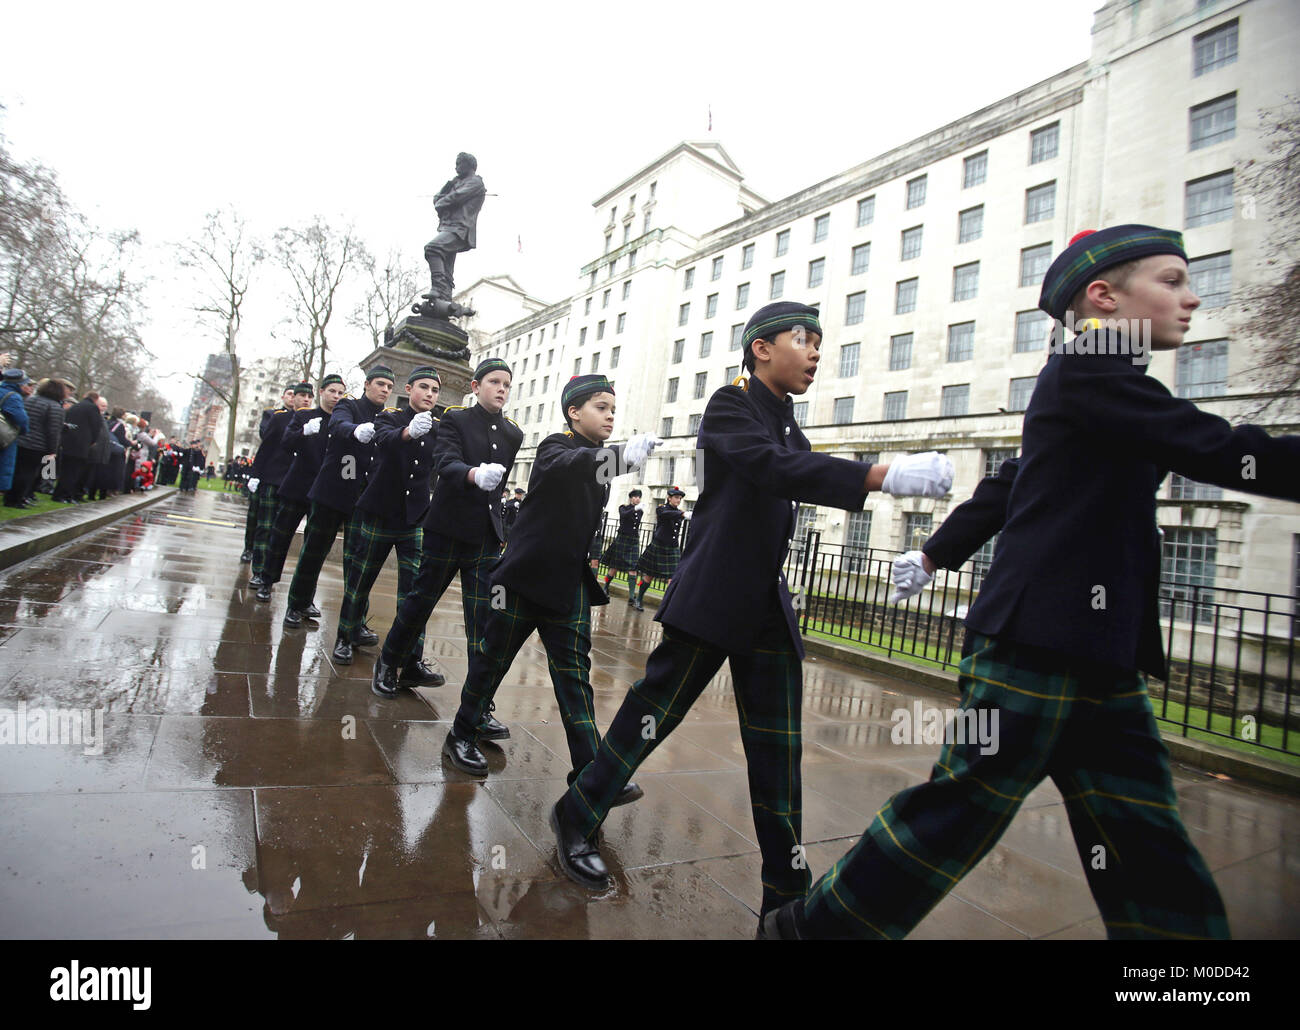 Studentische Mitglieder der Rohre und Trommeln Band aus Gordon's School in Surrey marschieren hinter der Statue von General Gordon von Khartum in Whitehall Gardens, London, nach Ihren jährlichen Gedenkfeier zu seinem Tod zu gedenken. Stockfoto